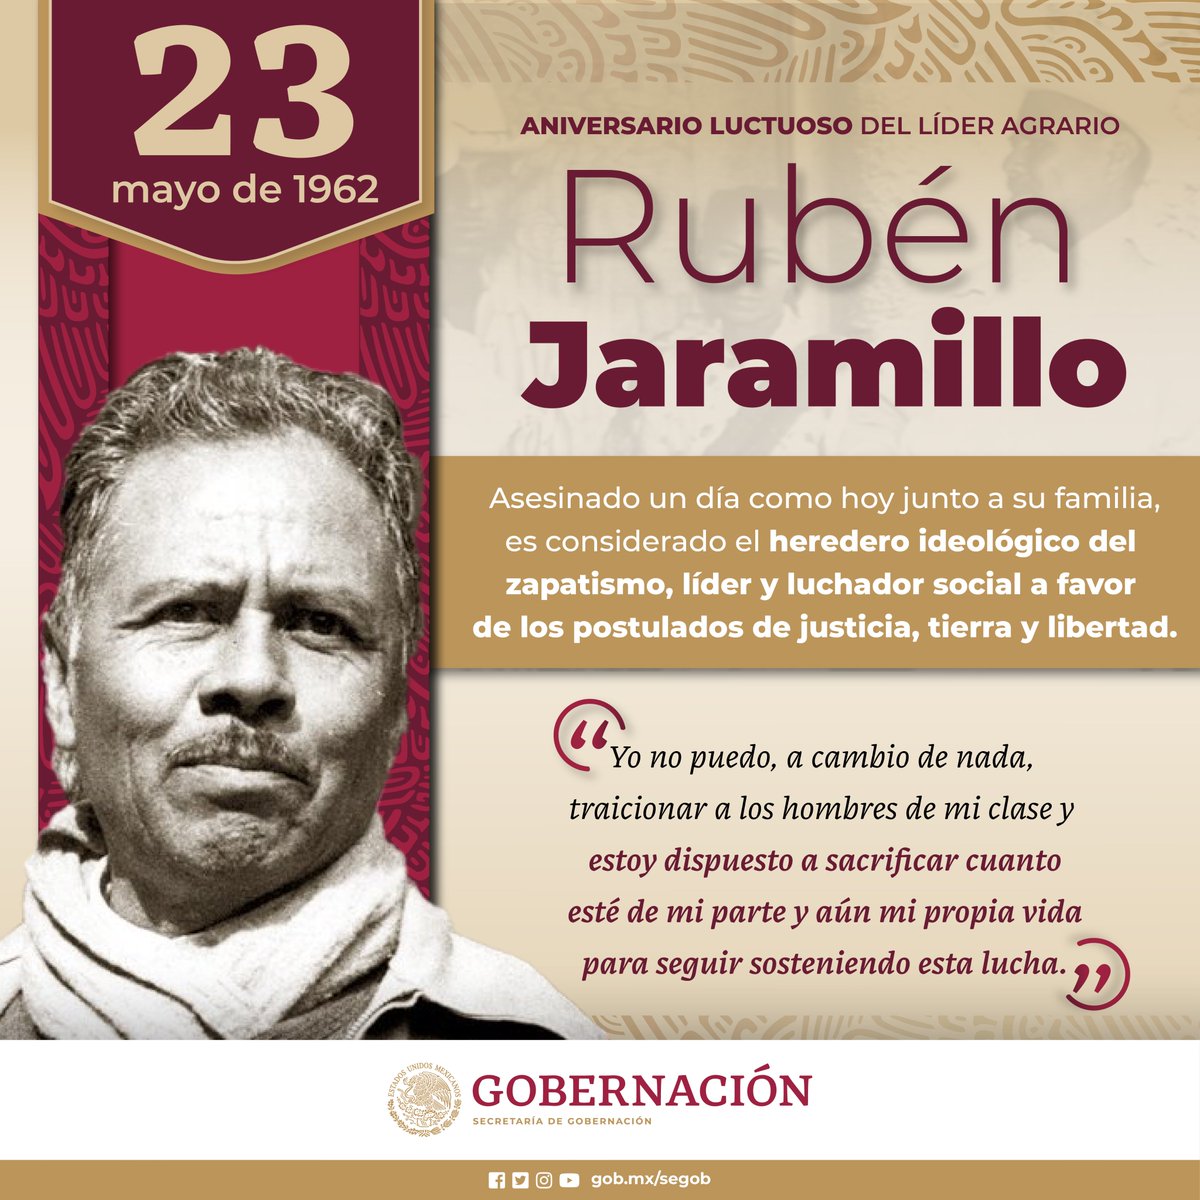 #SabíasQue el líder agrario Rubén Jaramillo perdió las elecciones por la gubernatura de Morelos de 1952, víctima de fraude, desencadenando una insurrección que se prolongó por dos décadas. Esta lucha culminó en su trágica muerte, junto con la de su familia.